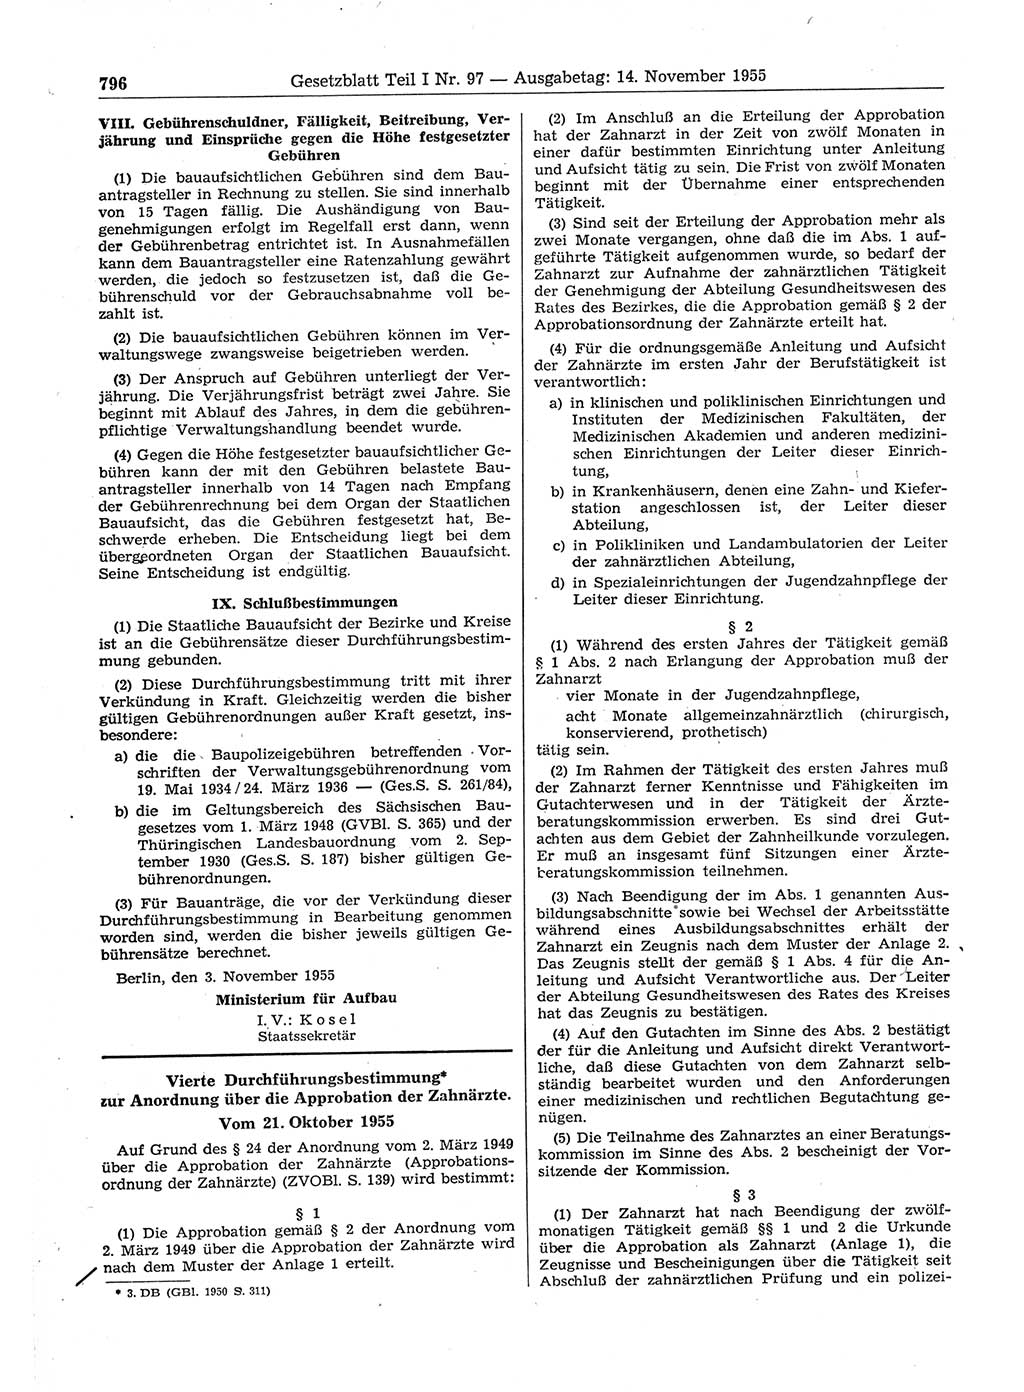 Gesetzblatt (GBl.) der Deutschen Demokratischen Republik (DDR) Teil Ⅰ 1955, Seite 796 (GBl. DDR Ⅰ 1955, S. 796)